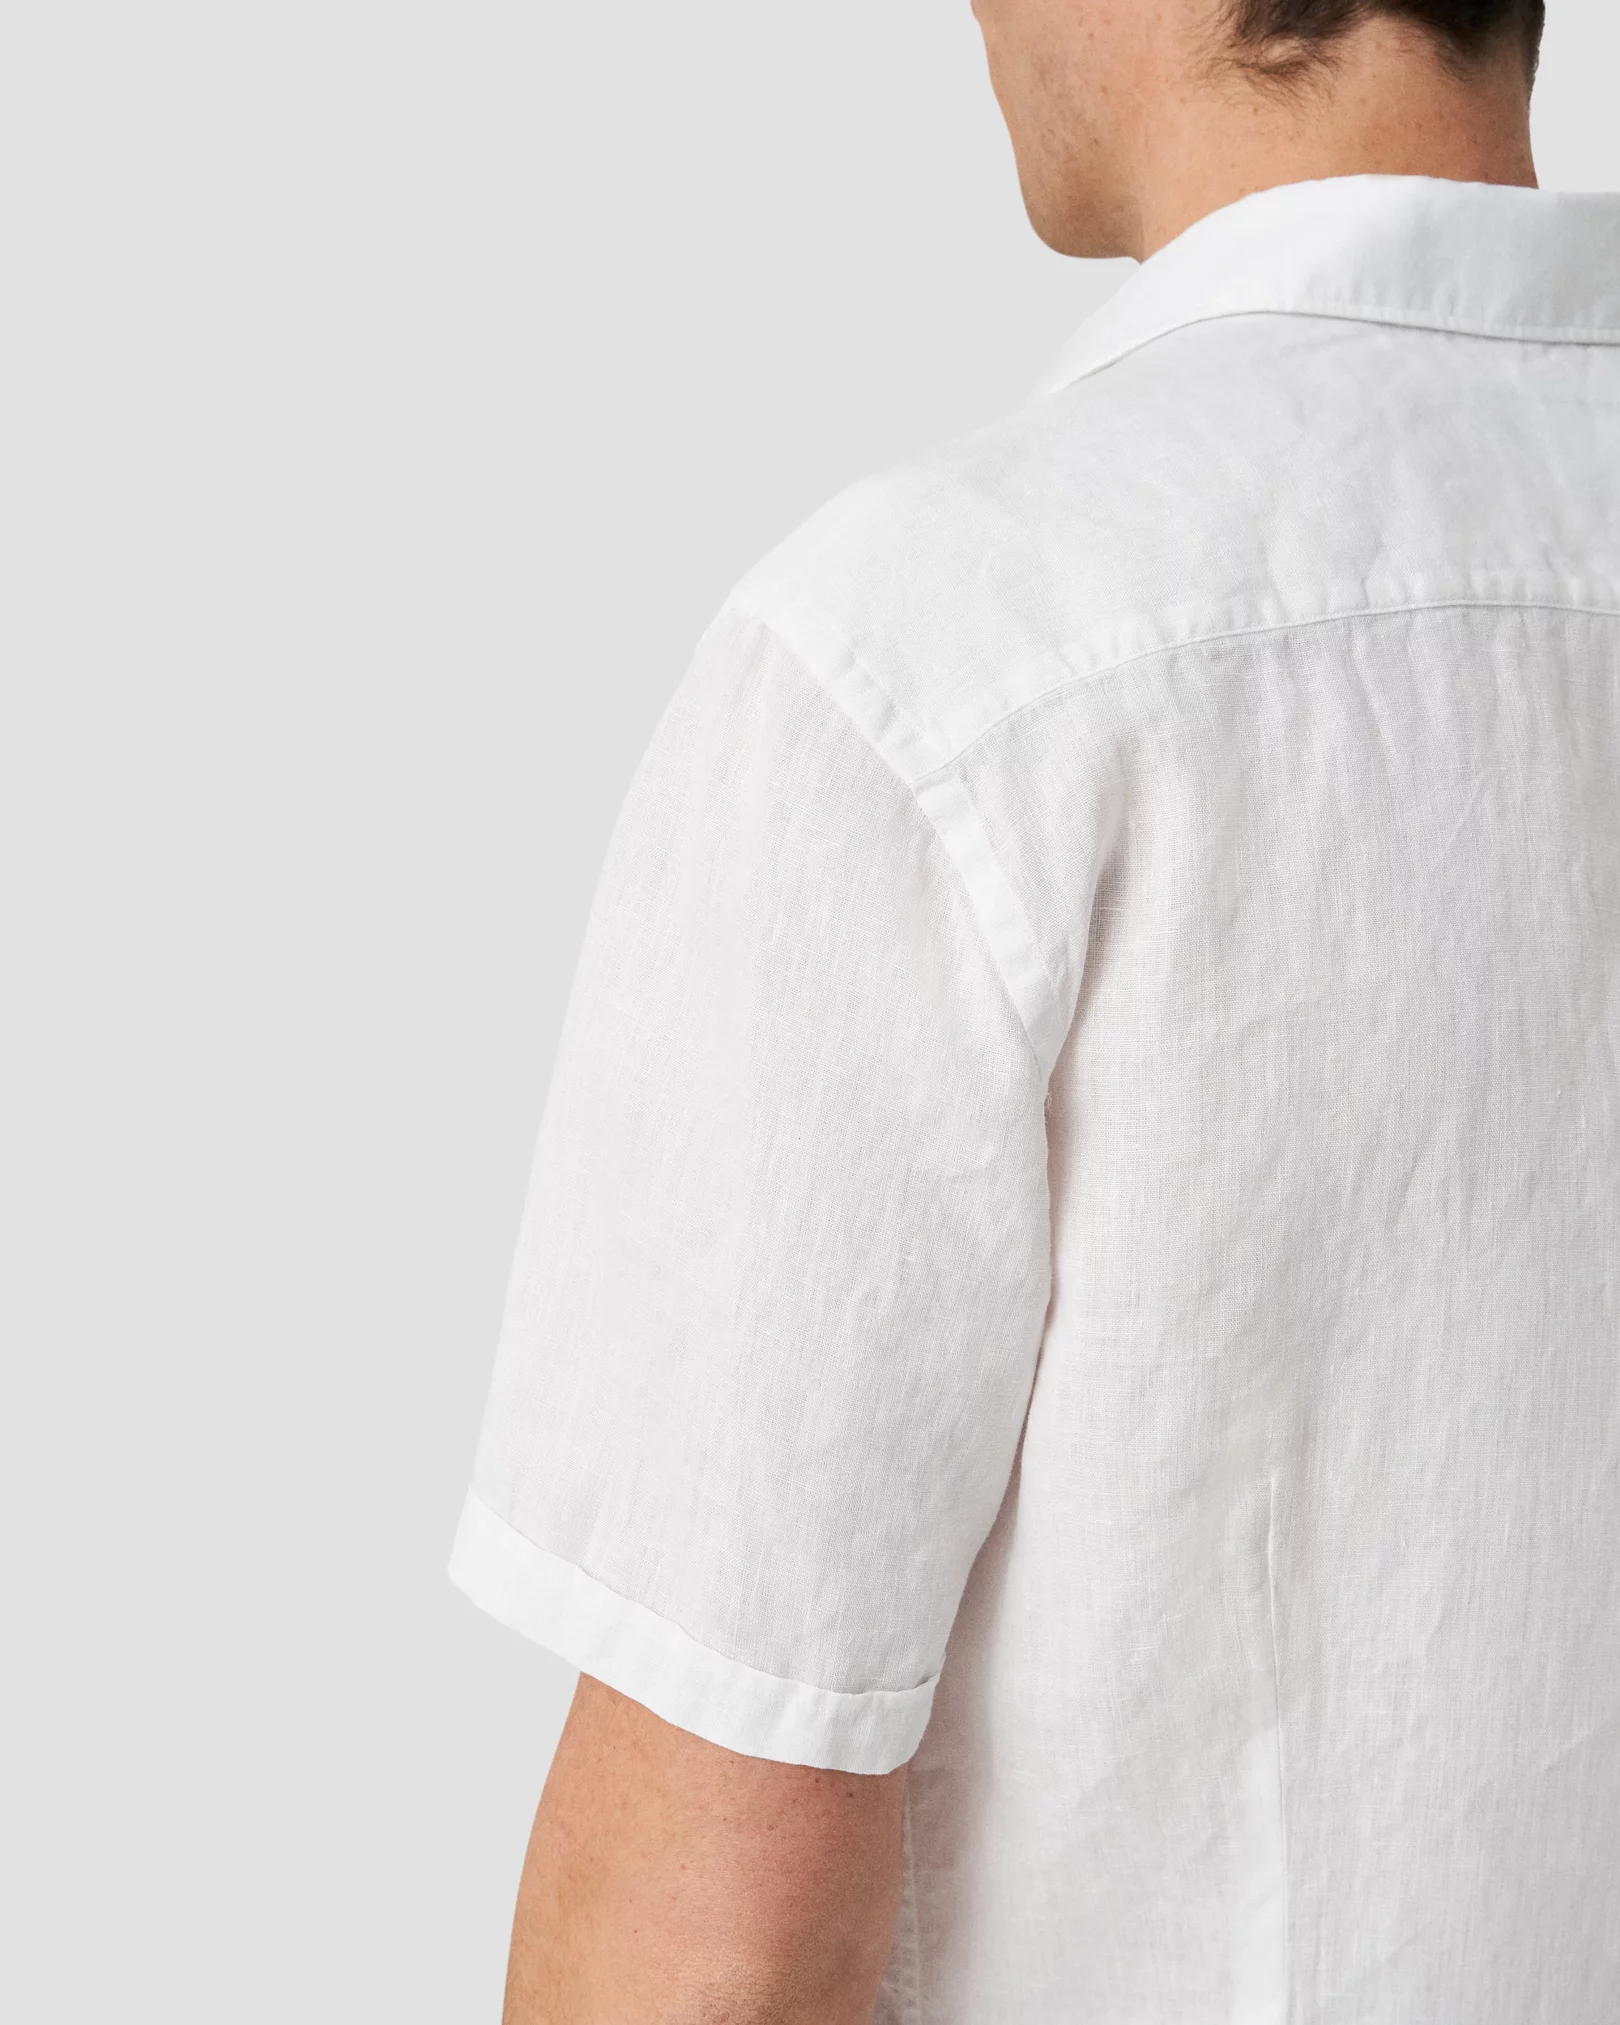 Eton - short sleeved linen shirt